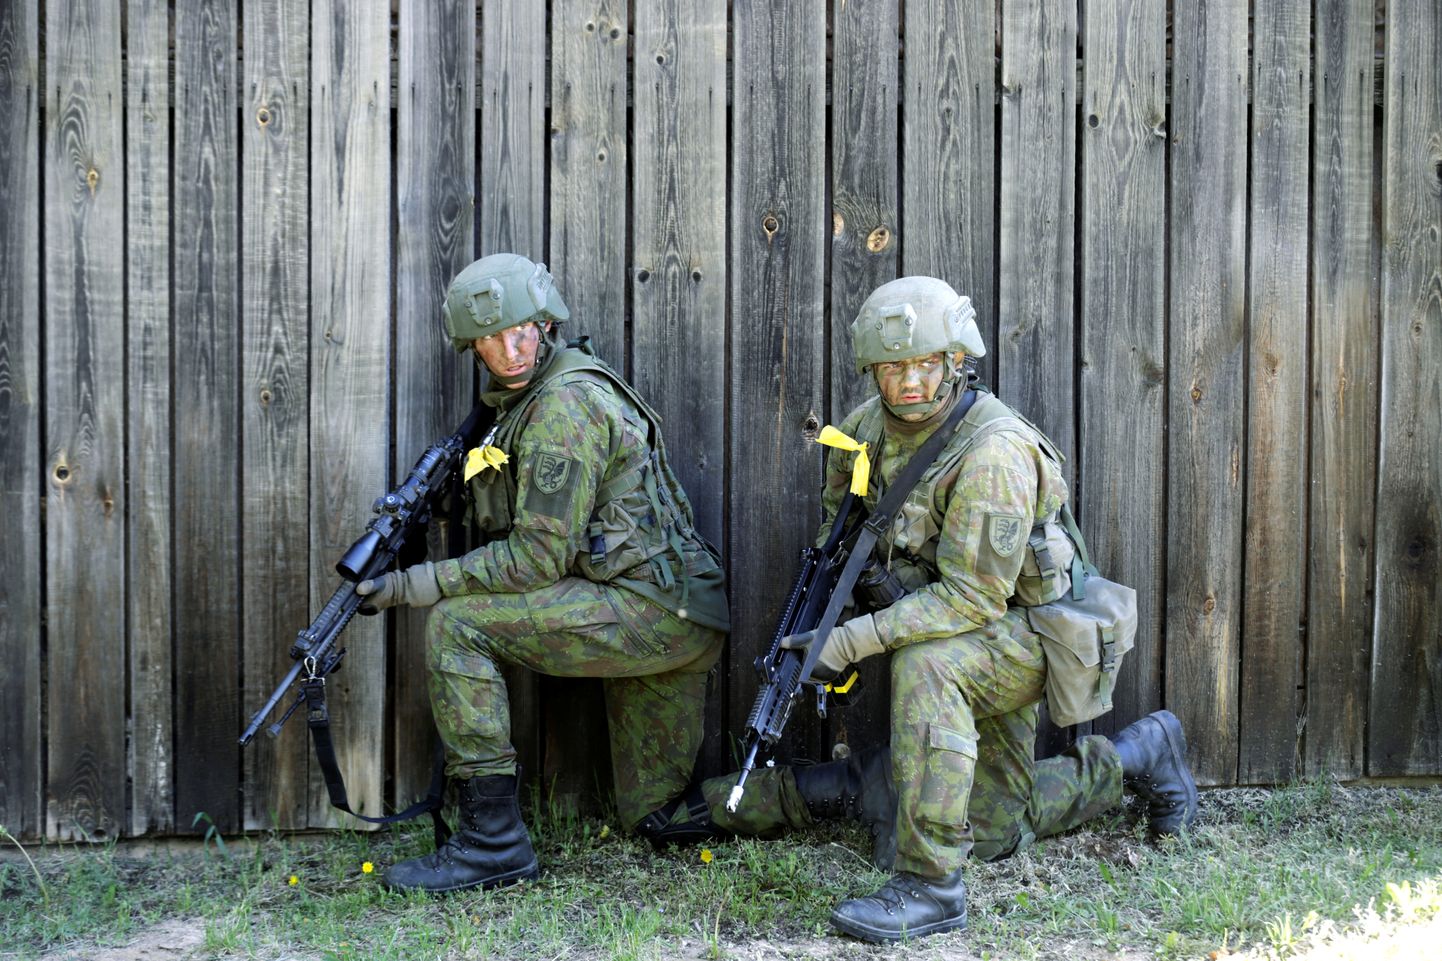 Leedu sõdurid 2016. aastal Kevadtormil.